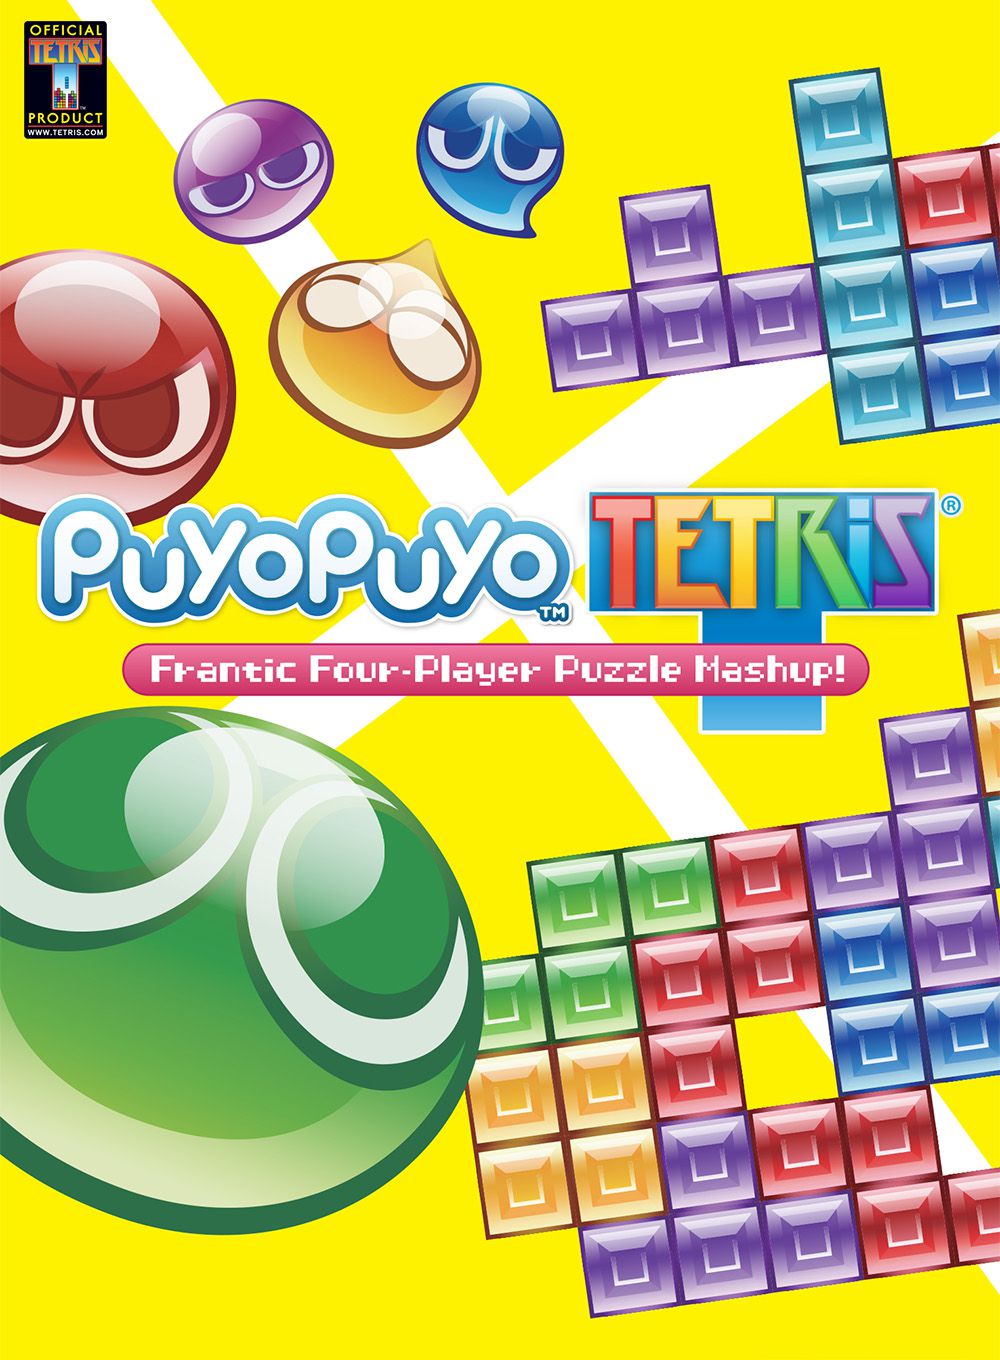 jaquette reduite de Puyo Puyo Tetris sur PC